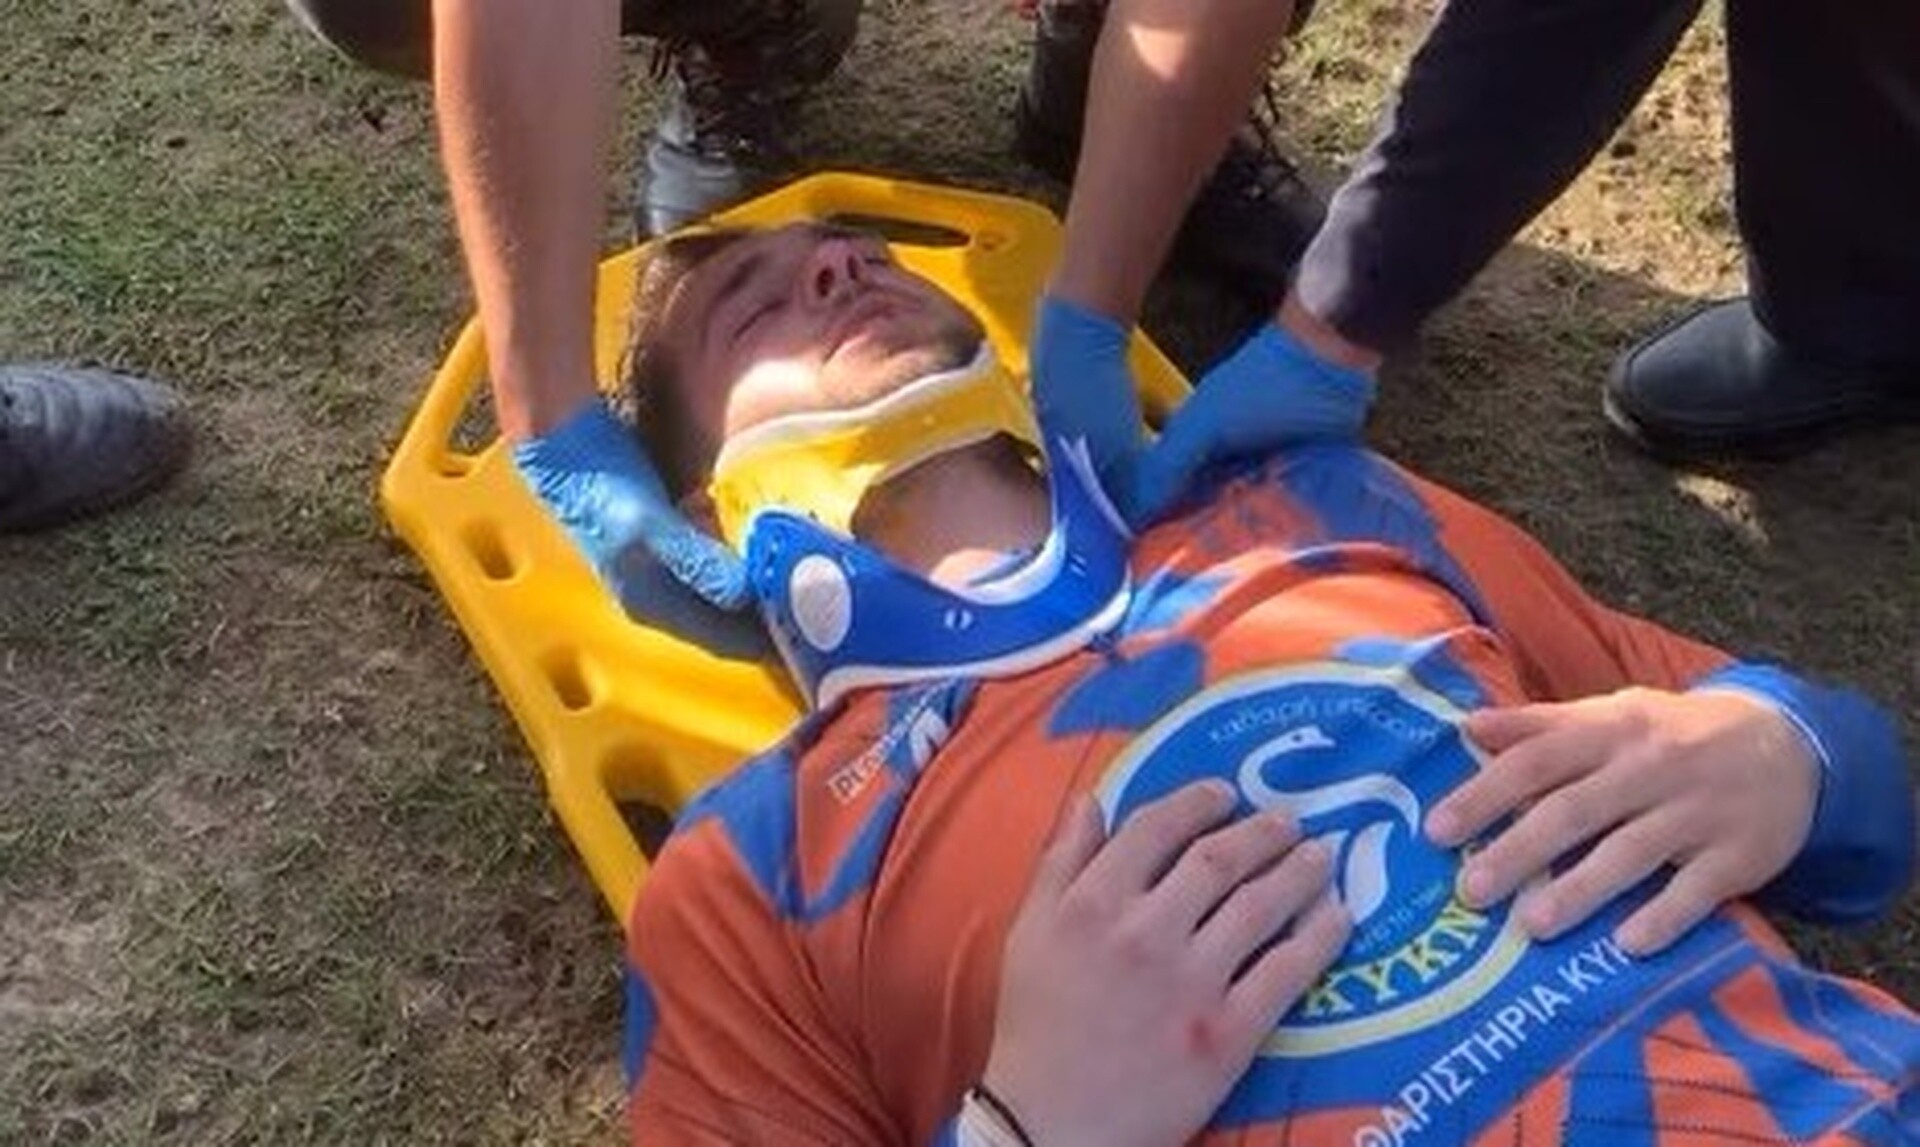 Πάτρα: Ποδοσφαιριστής διακομίστηκε στο νοσοκομείο - Του έριξε γροθιά ο αντίπαλος βοηθός προπονητή